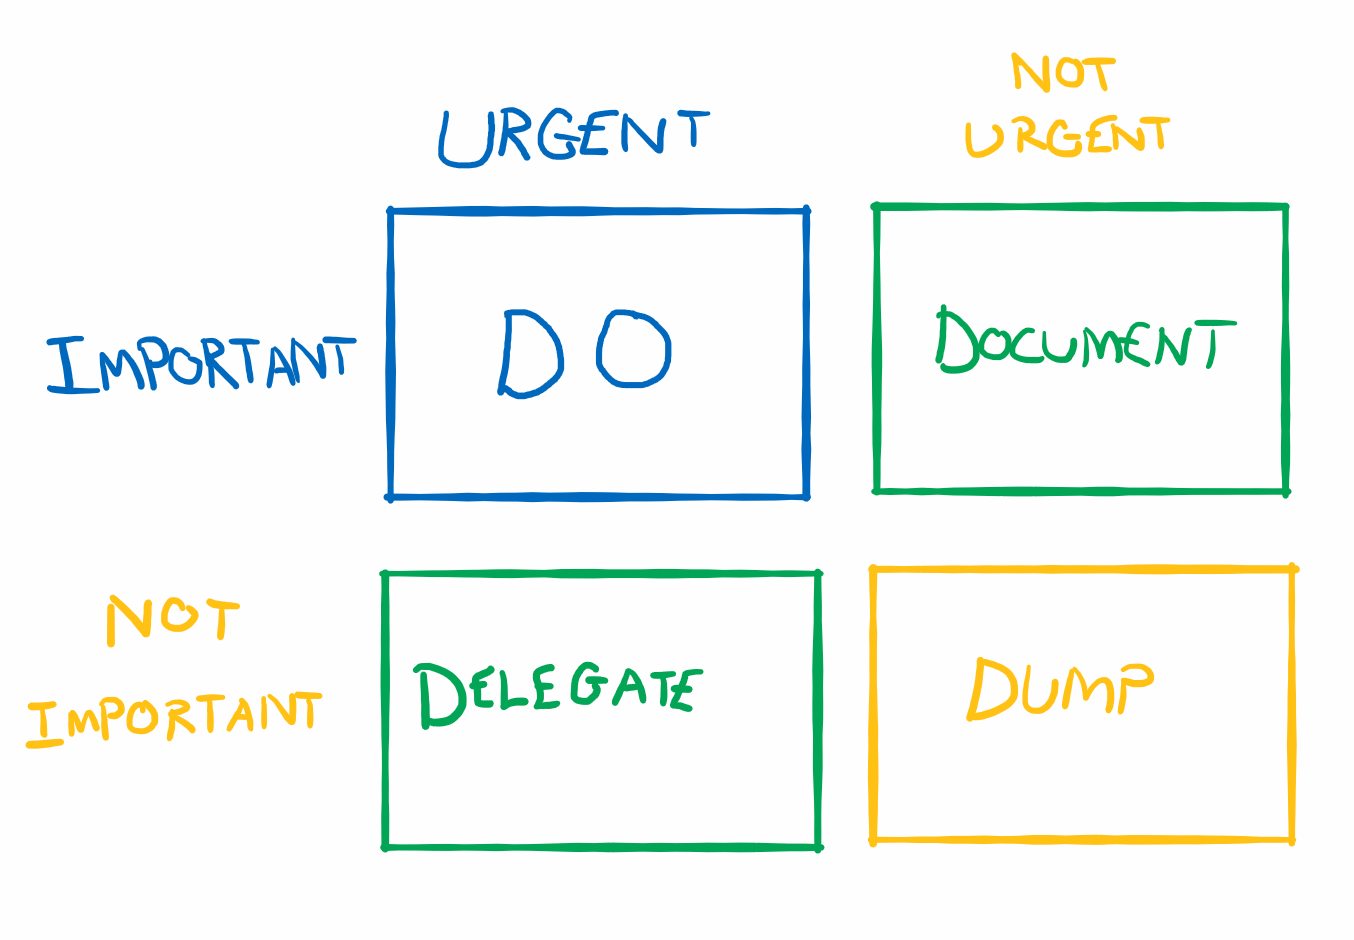 Eisenhower Matrix - Do, Document, Delegate, Dump